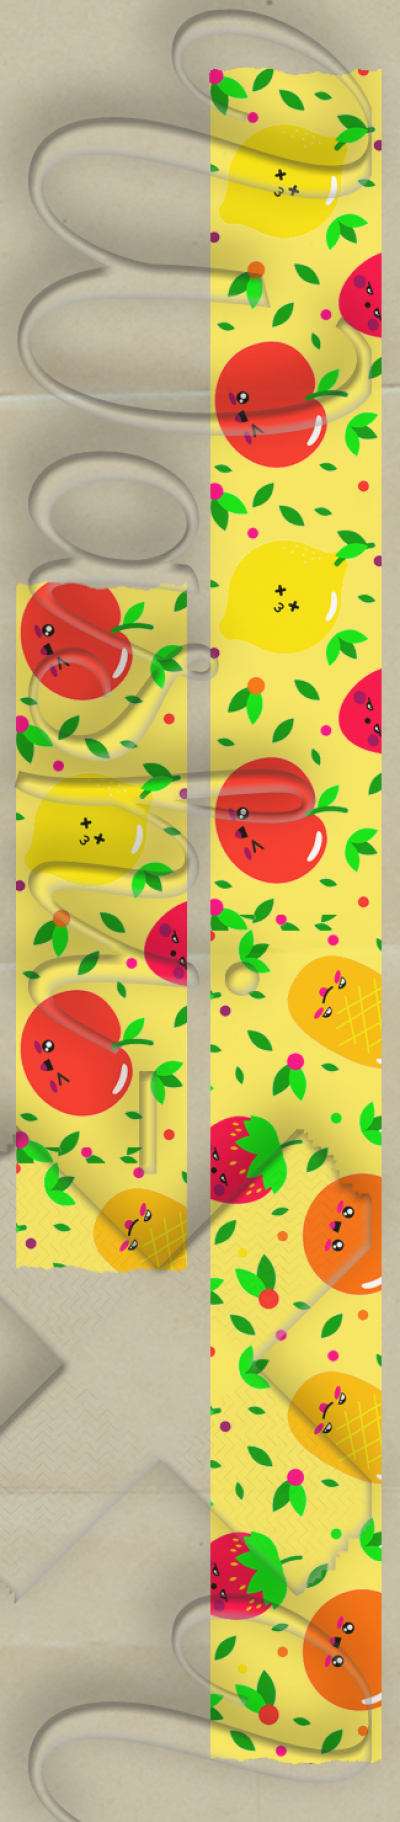 Fruits patterned washi tape